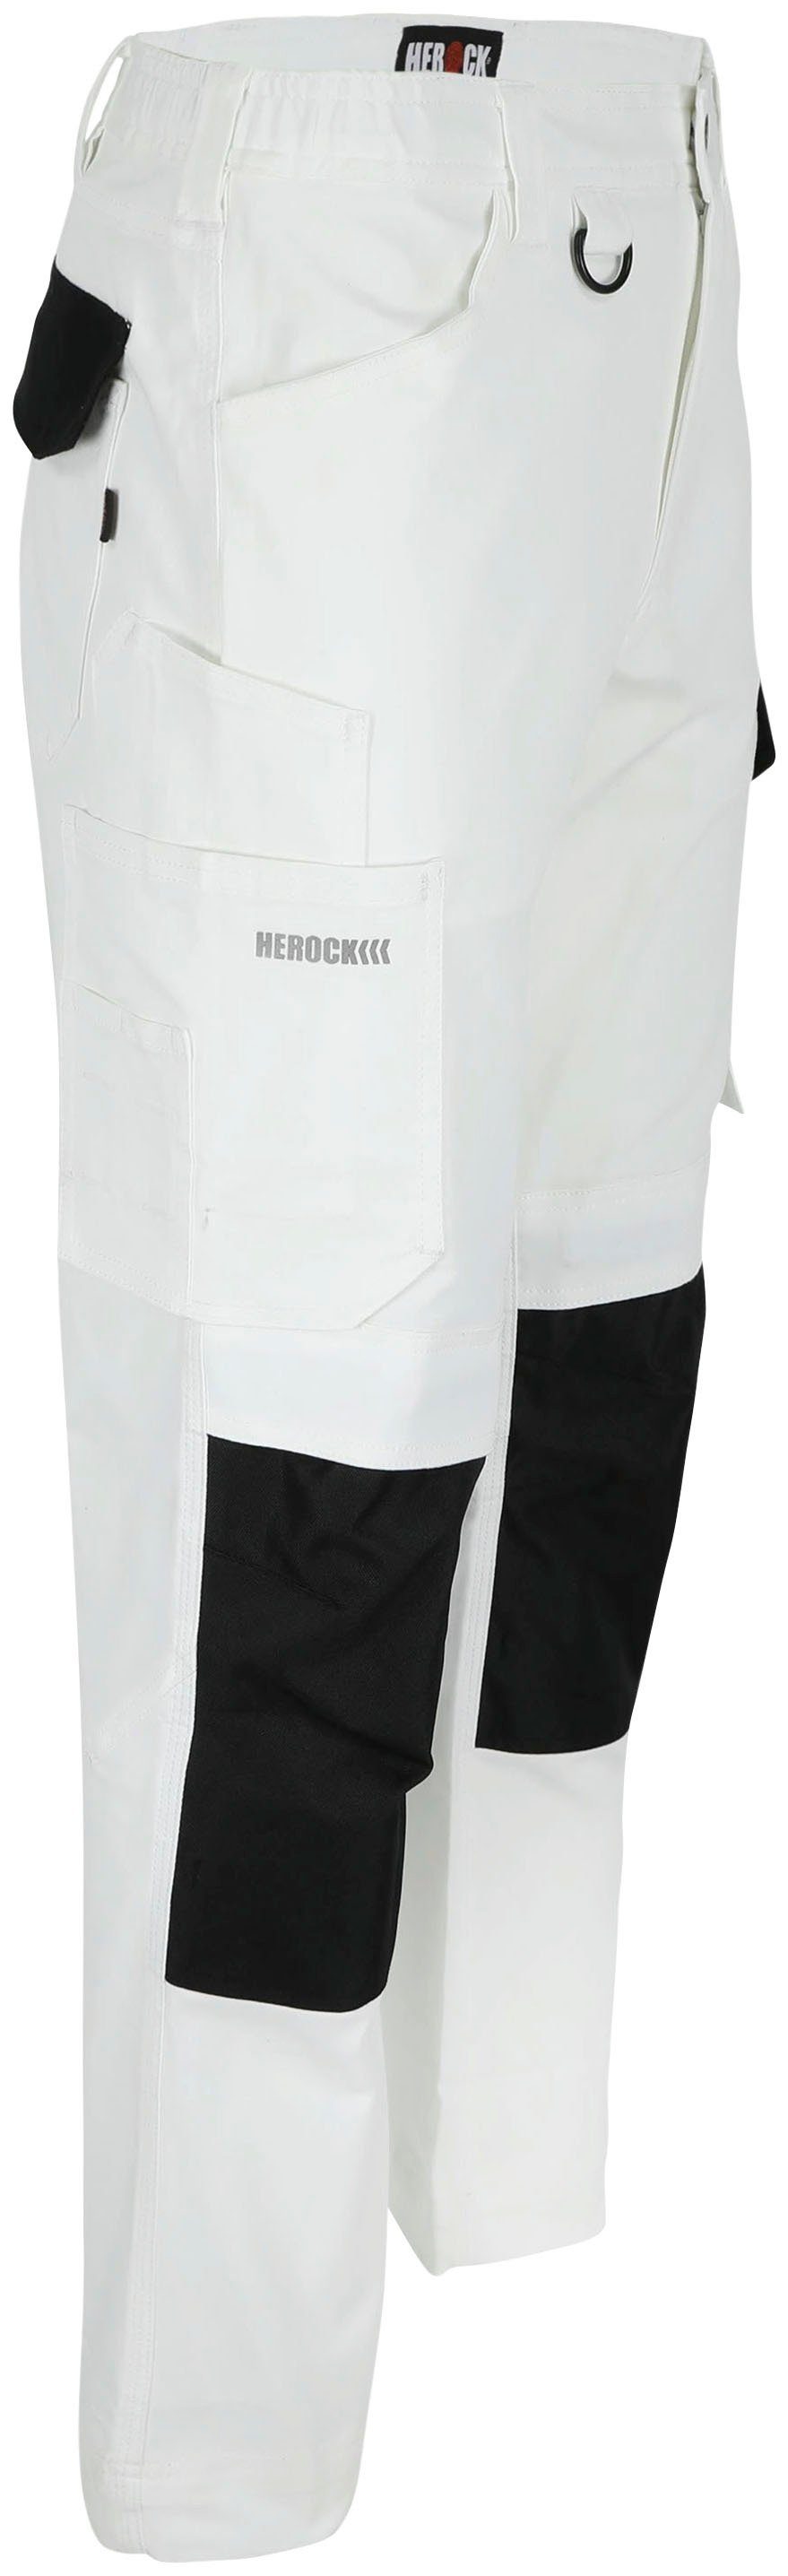 Herock Arbeitshose DERO Slim Fit wasserabweisend Multi-Pocket, Weiβ/Schwarz Passform, 2-Wege-Stretch